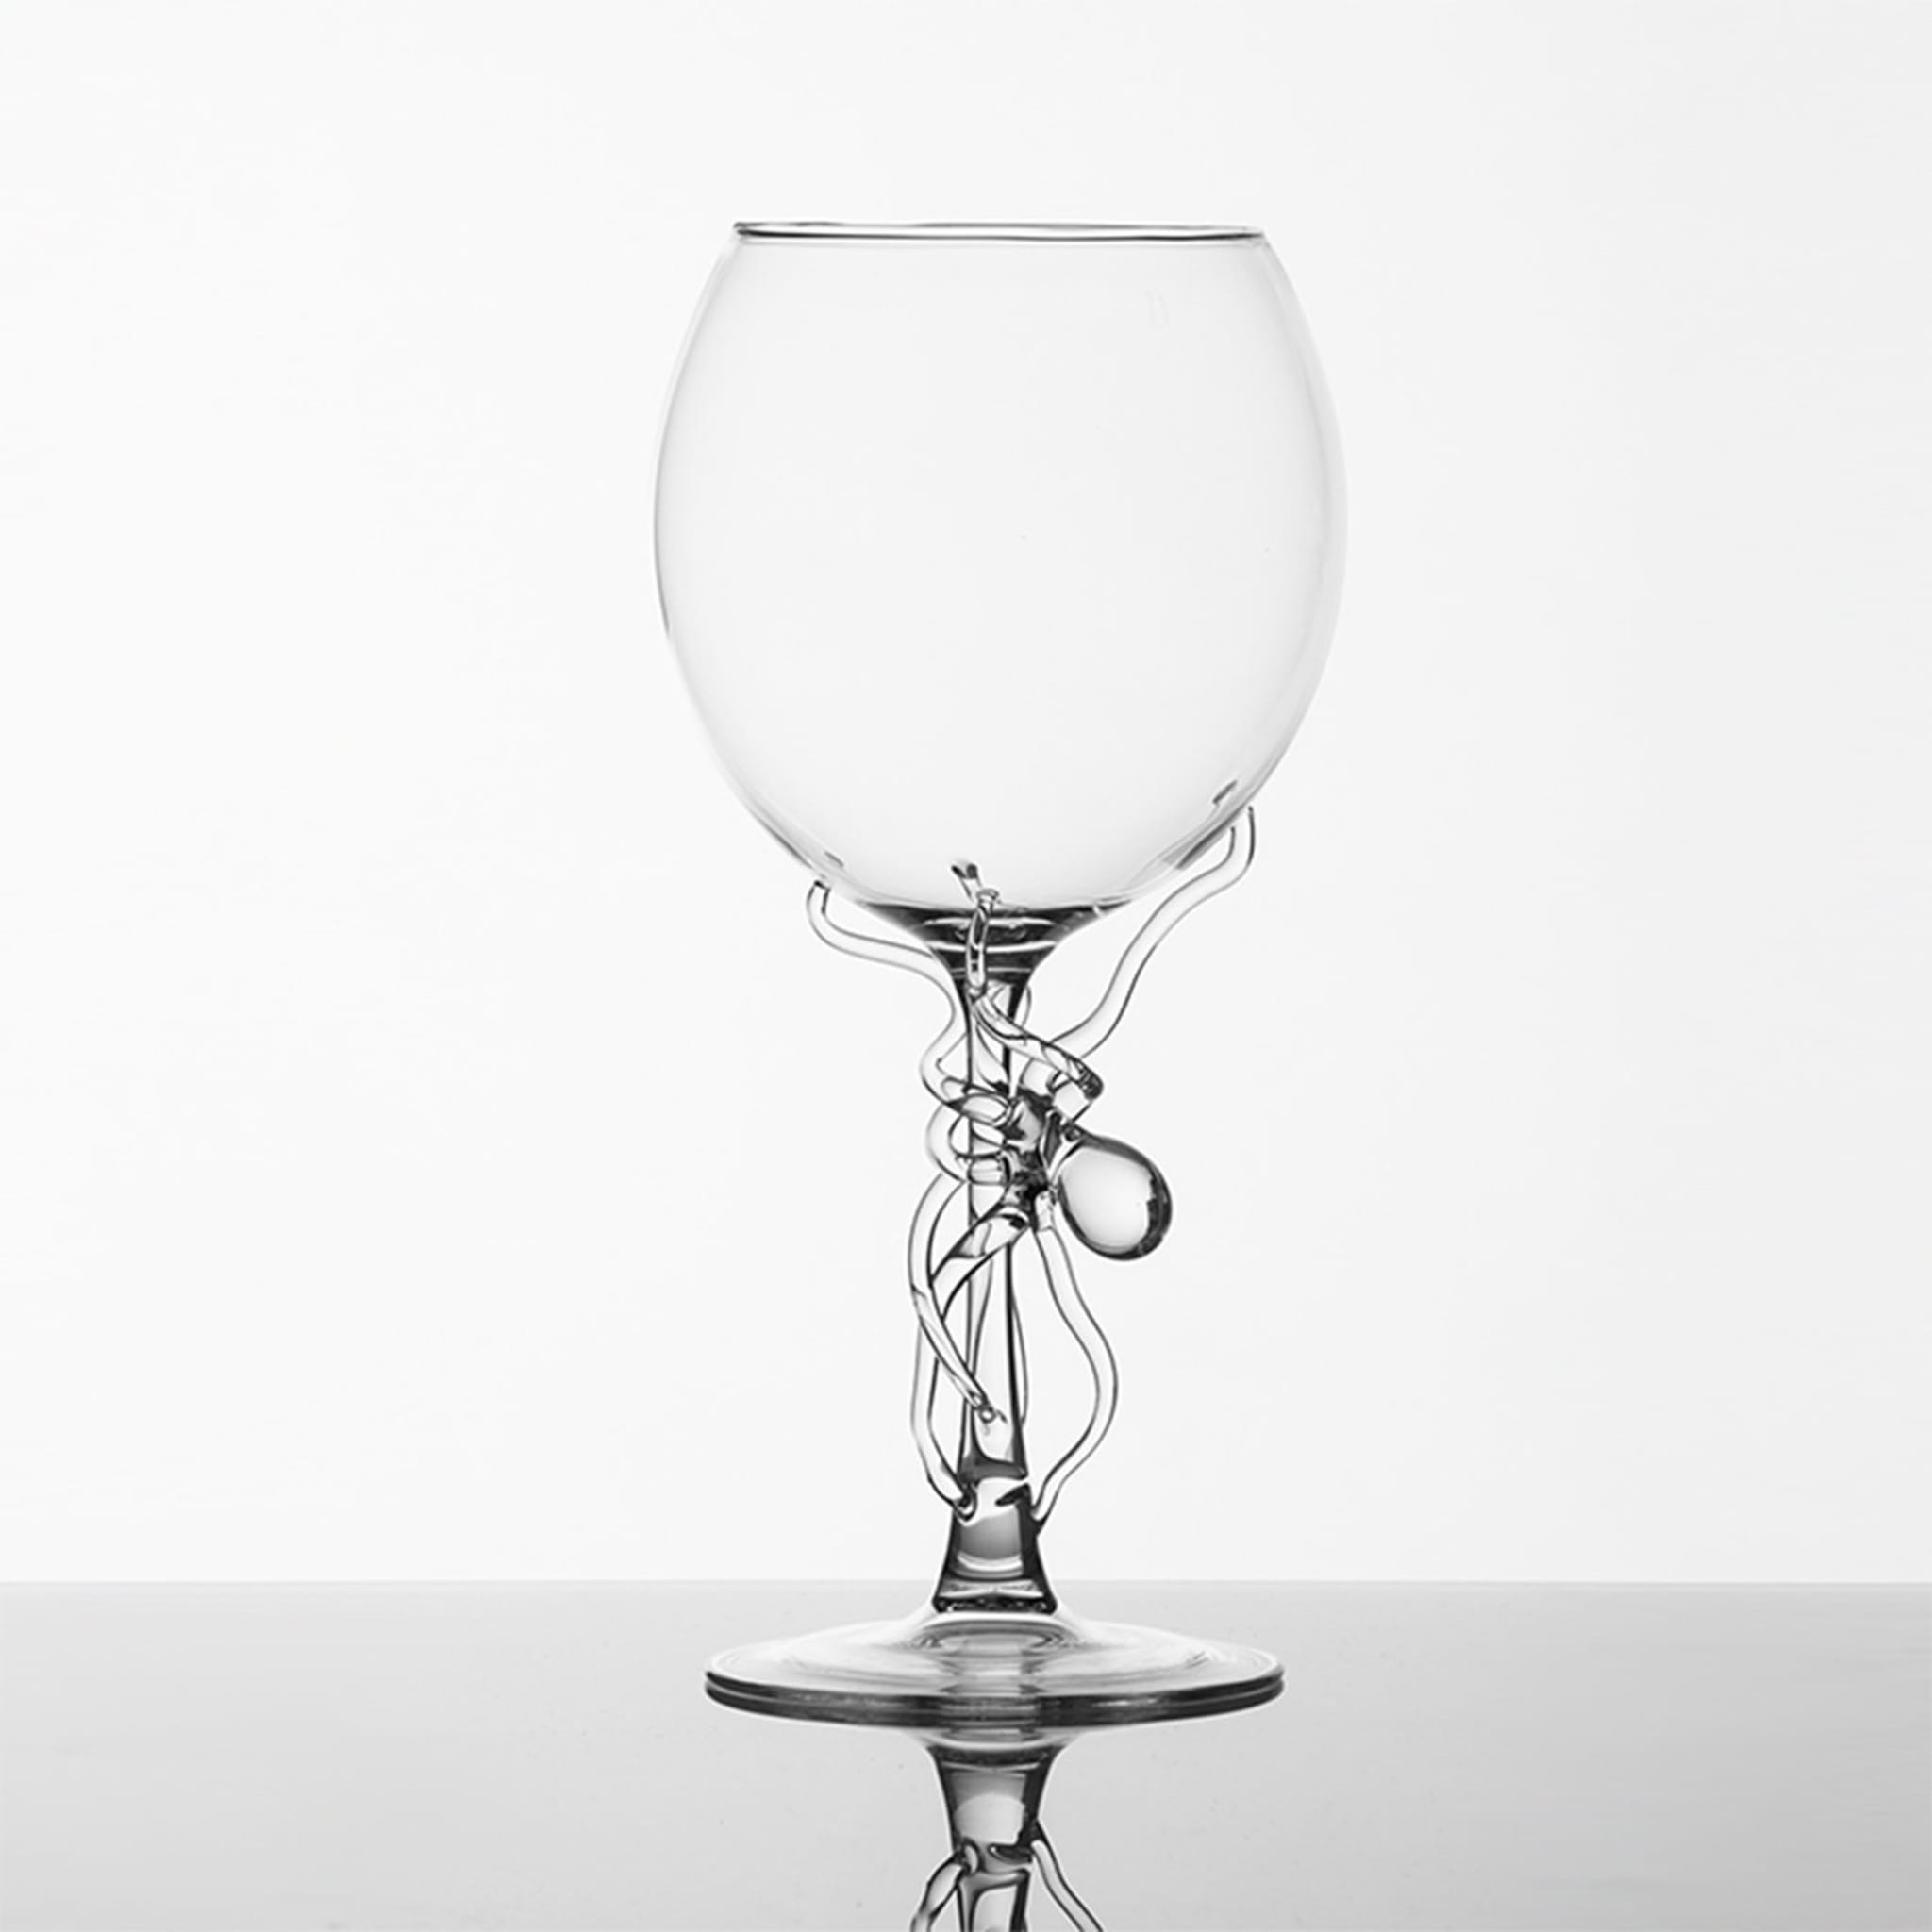 Polpo Wine Glass - Alternative view 1